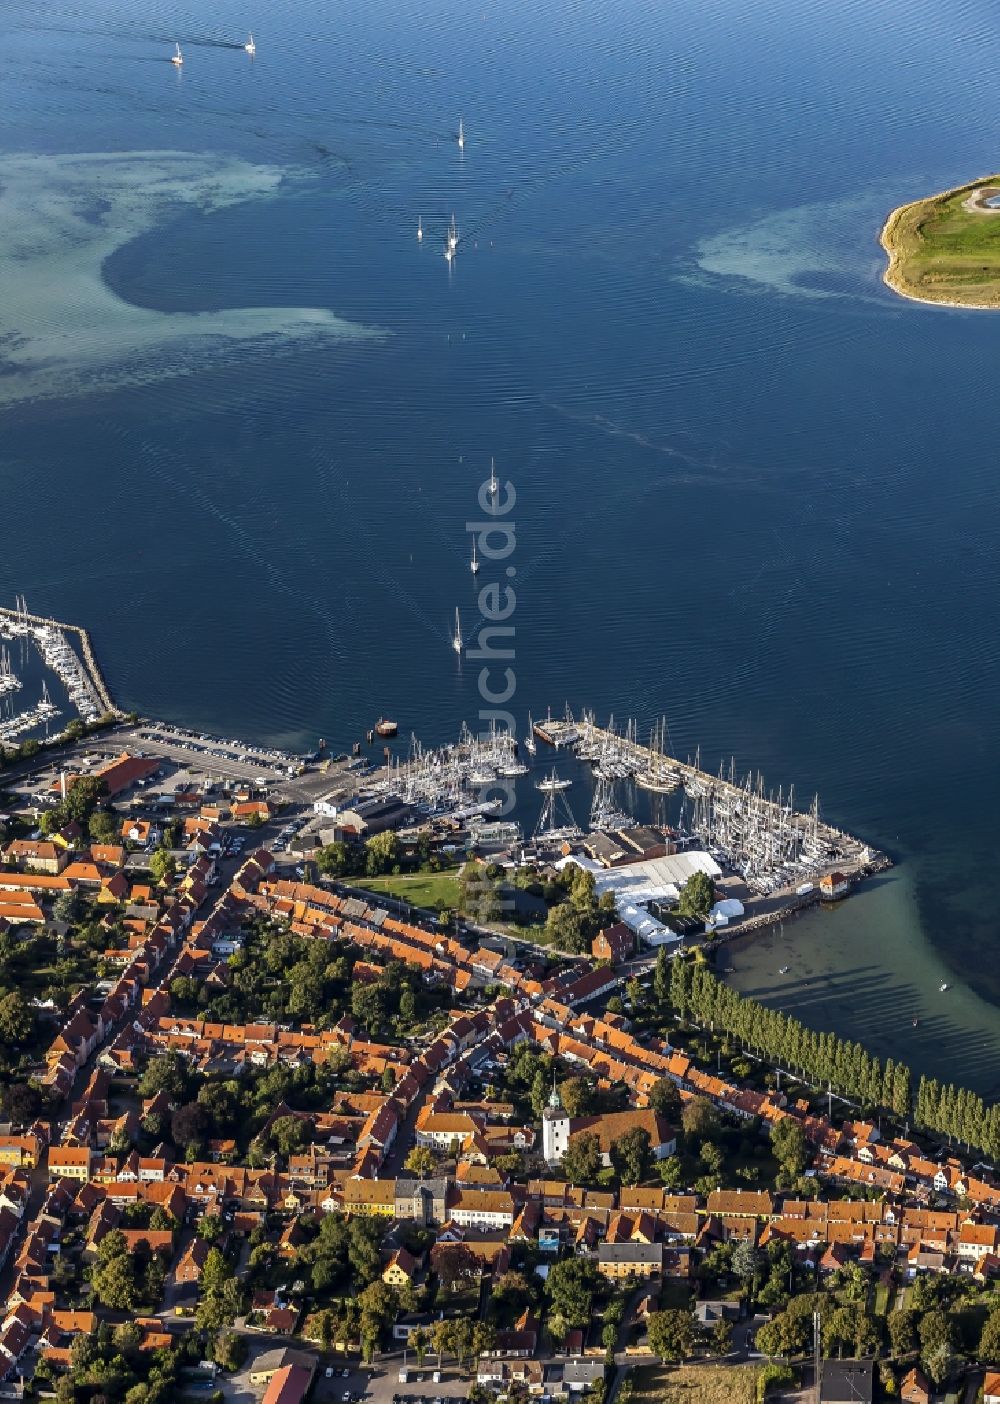 Luftbild Aeroeskoebing - Sportboot- Anlegestellen und Bootsliegeplätzen im Alten Hafen in Aeroeskoebing in Syddanmark, Dänemark